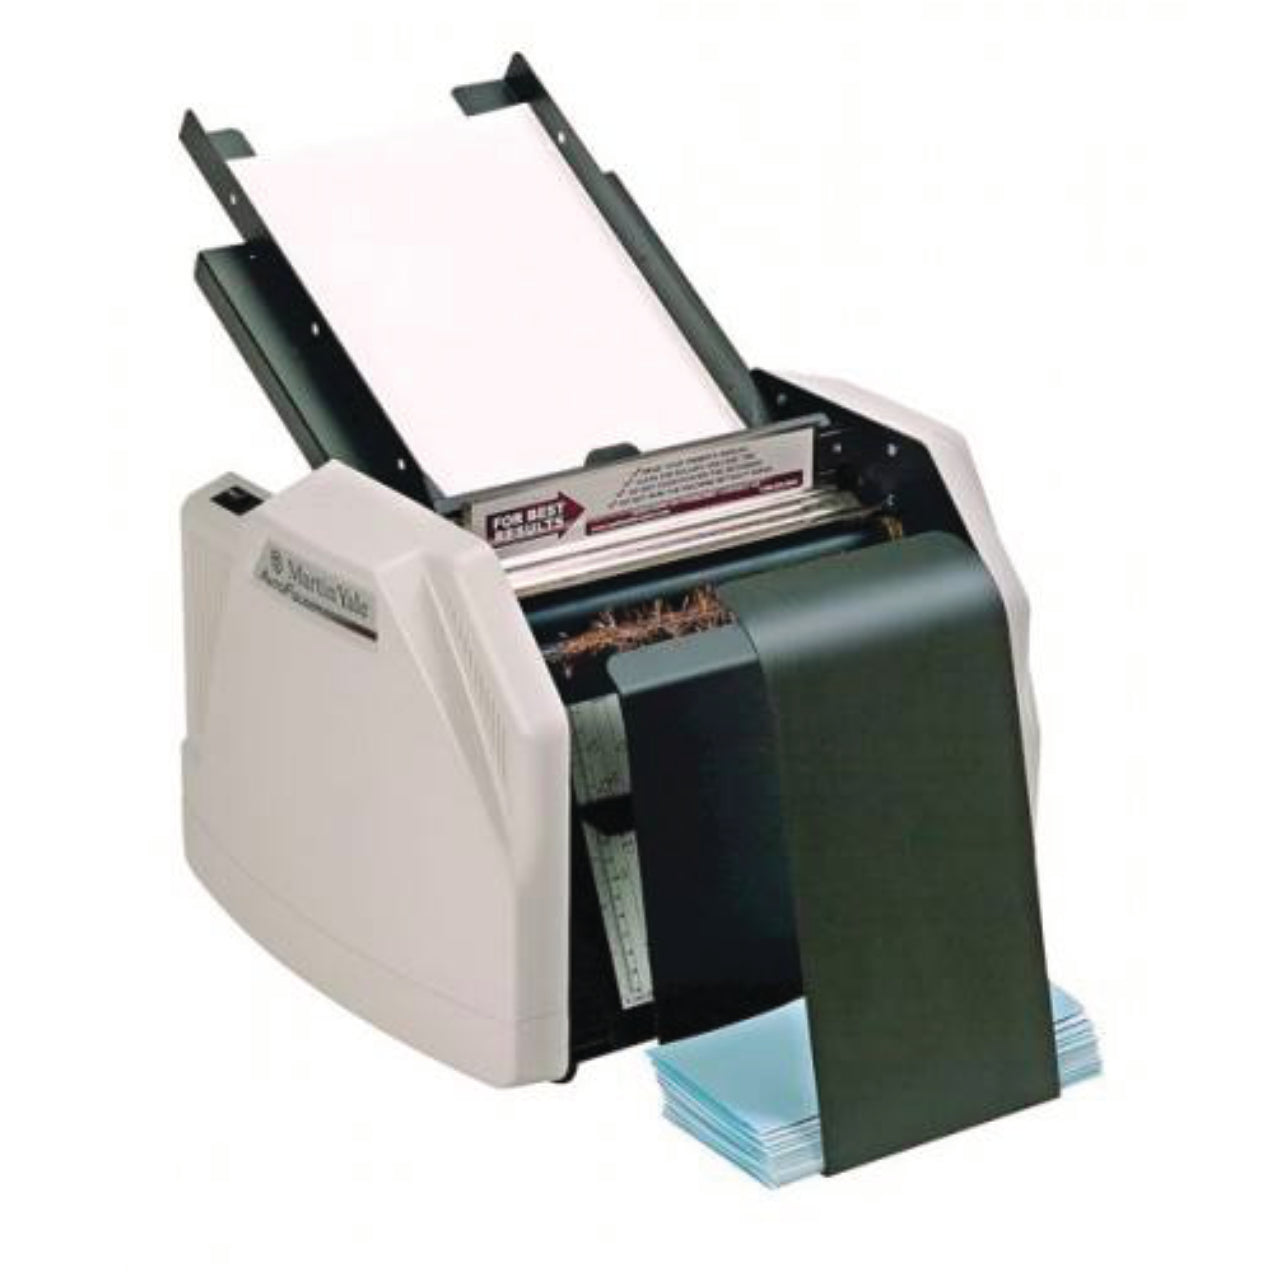 1501X Plieuse automatique de papier